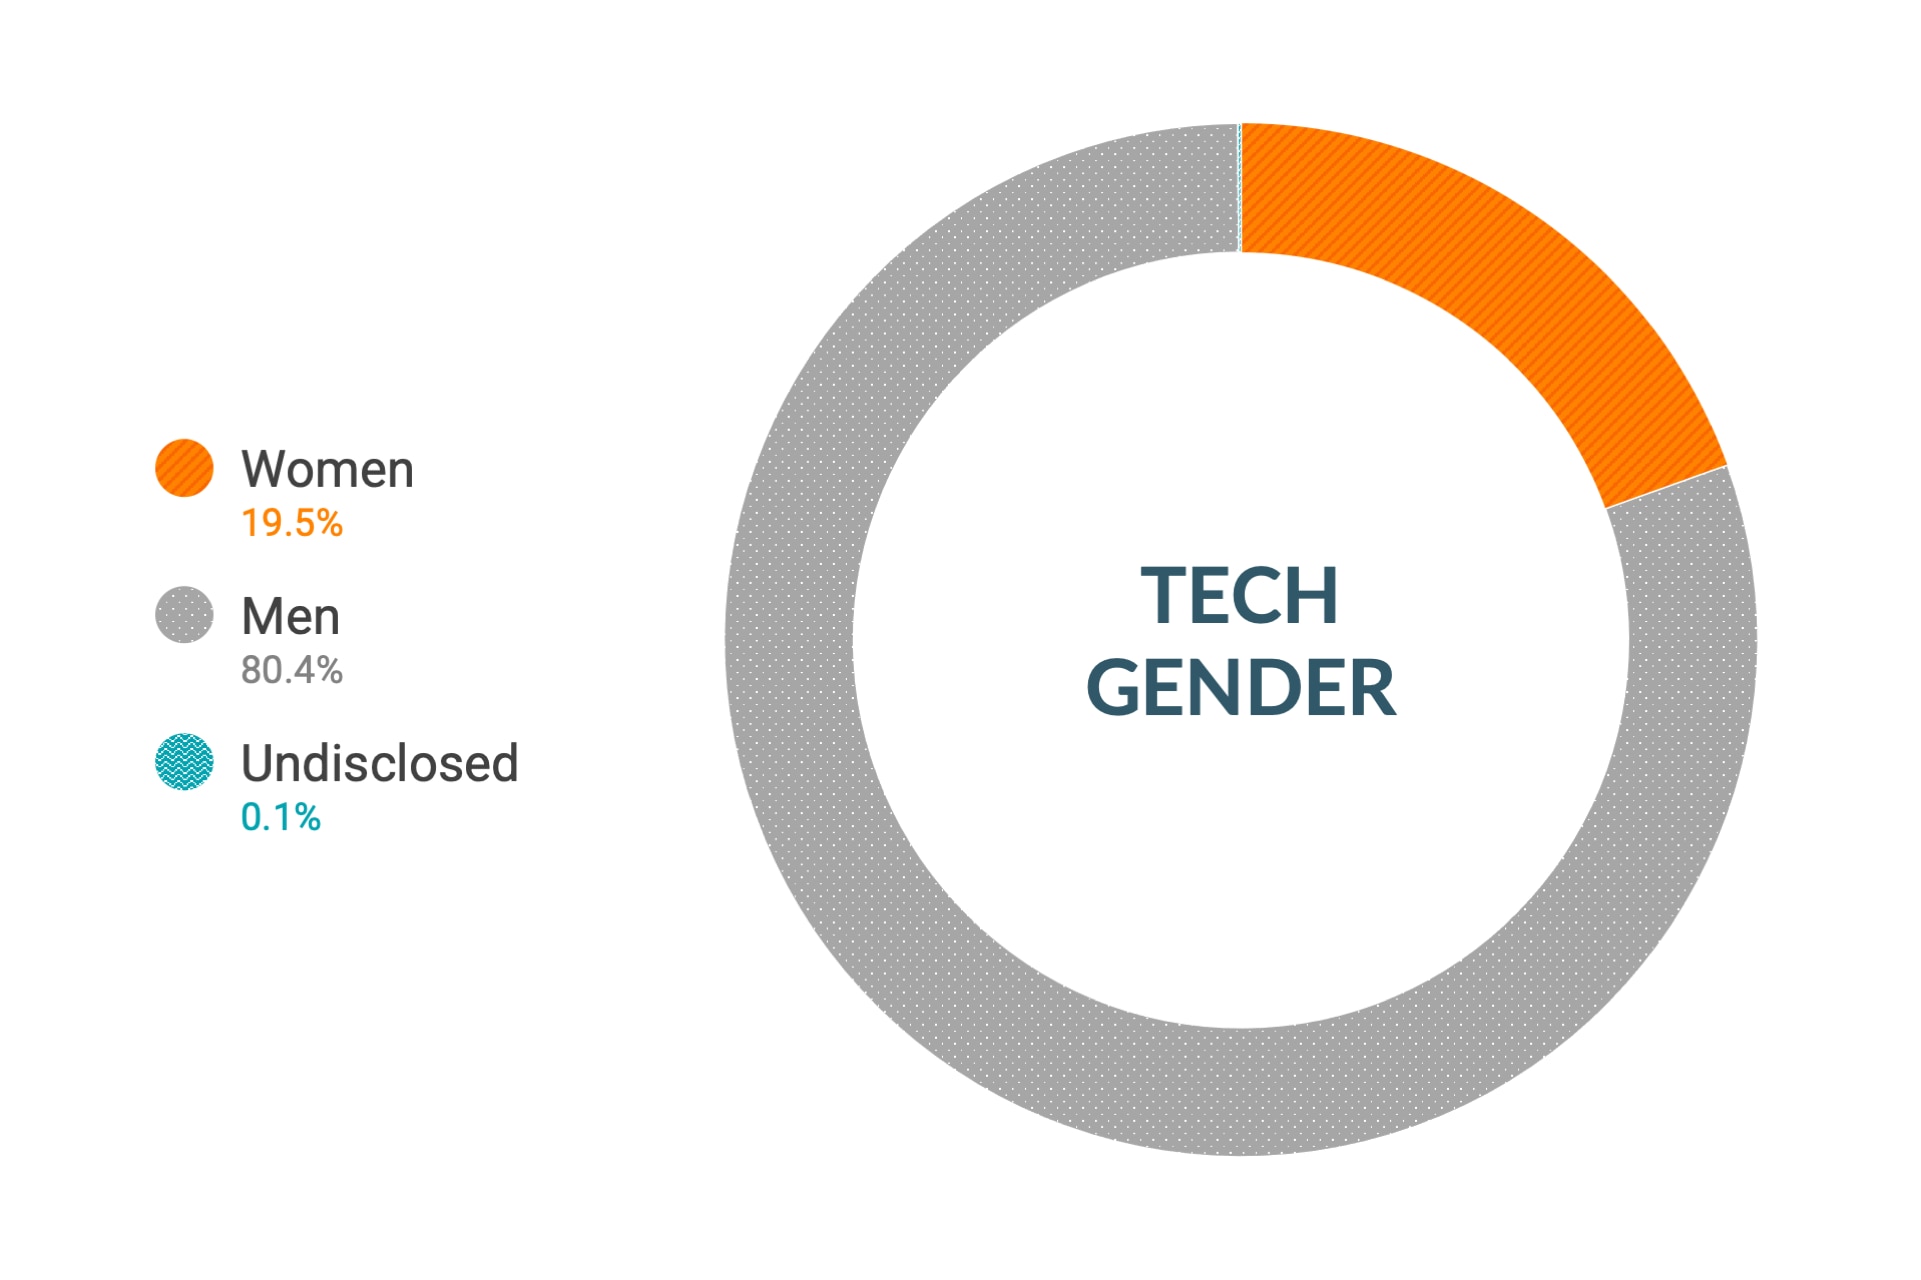 Dati Cloudera a livello globale su diversità e inclusione di genere nei ruoli tecnici e ingegneristici: donne 17,1%, uomini 82,8%, non dichiarato 0,1%